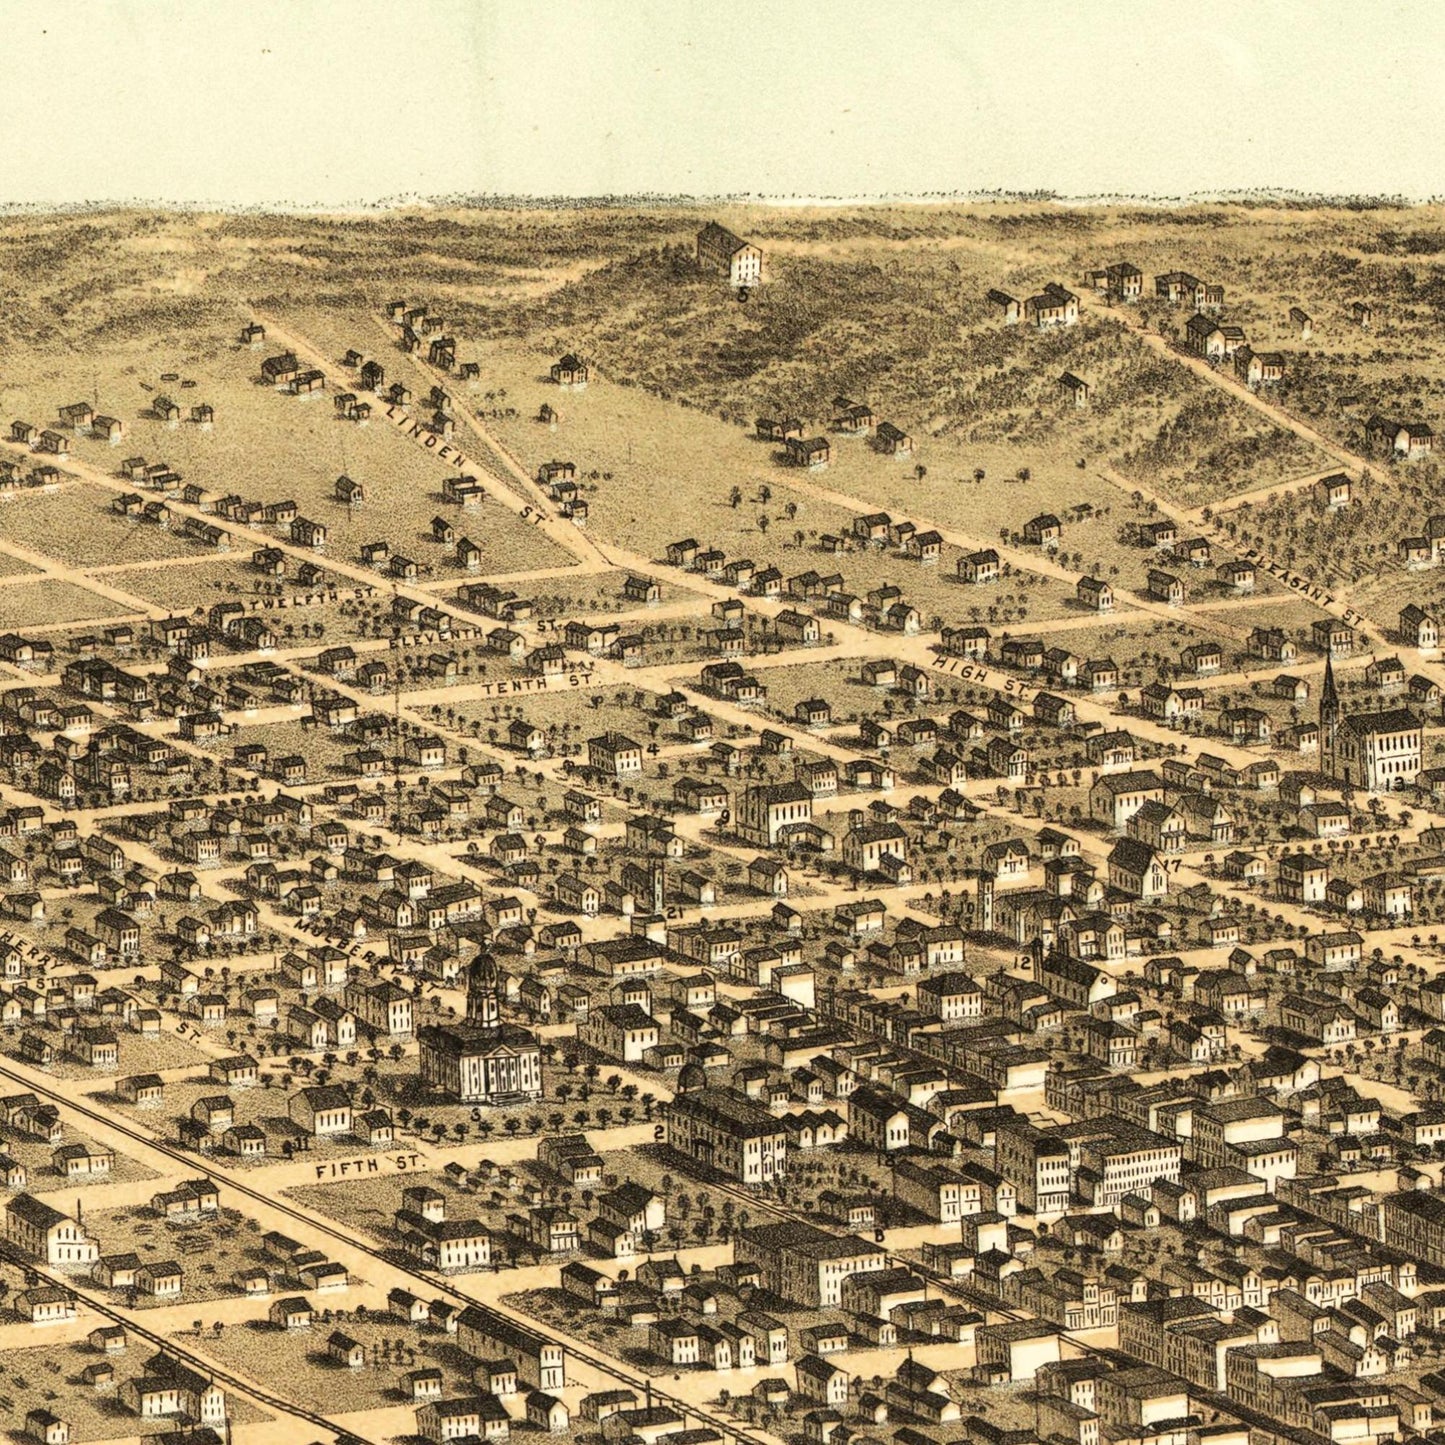 Historische Stadtansicht Des Moines um 1868